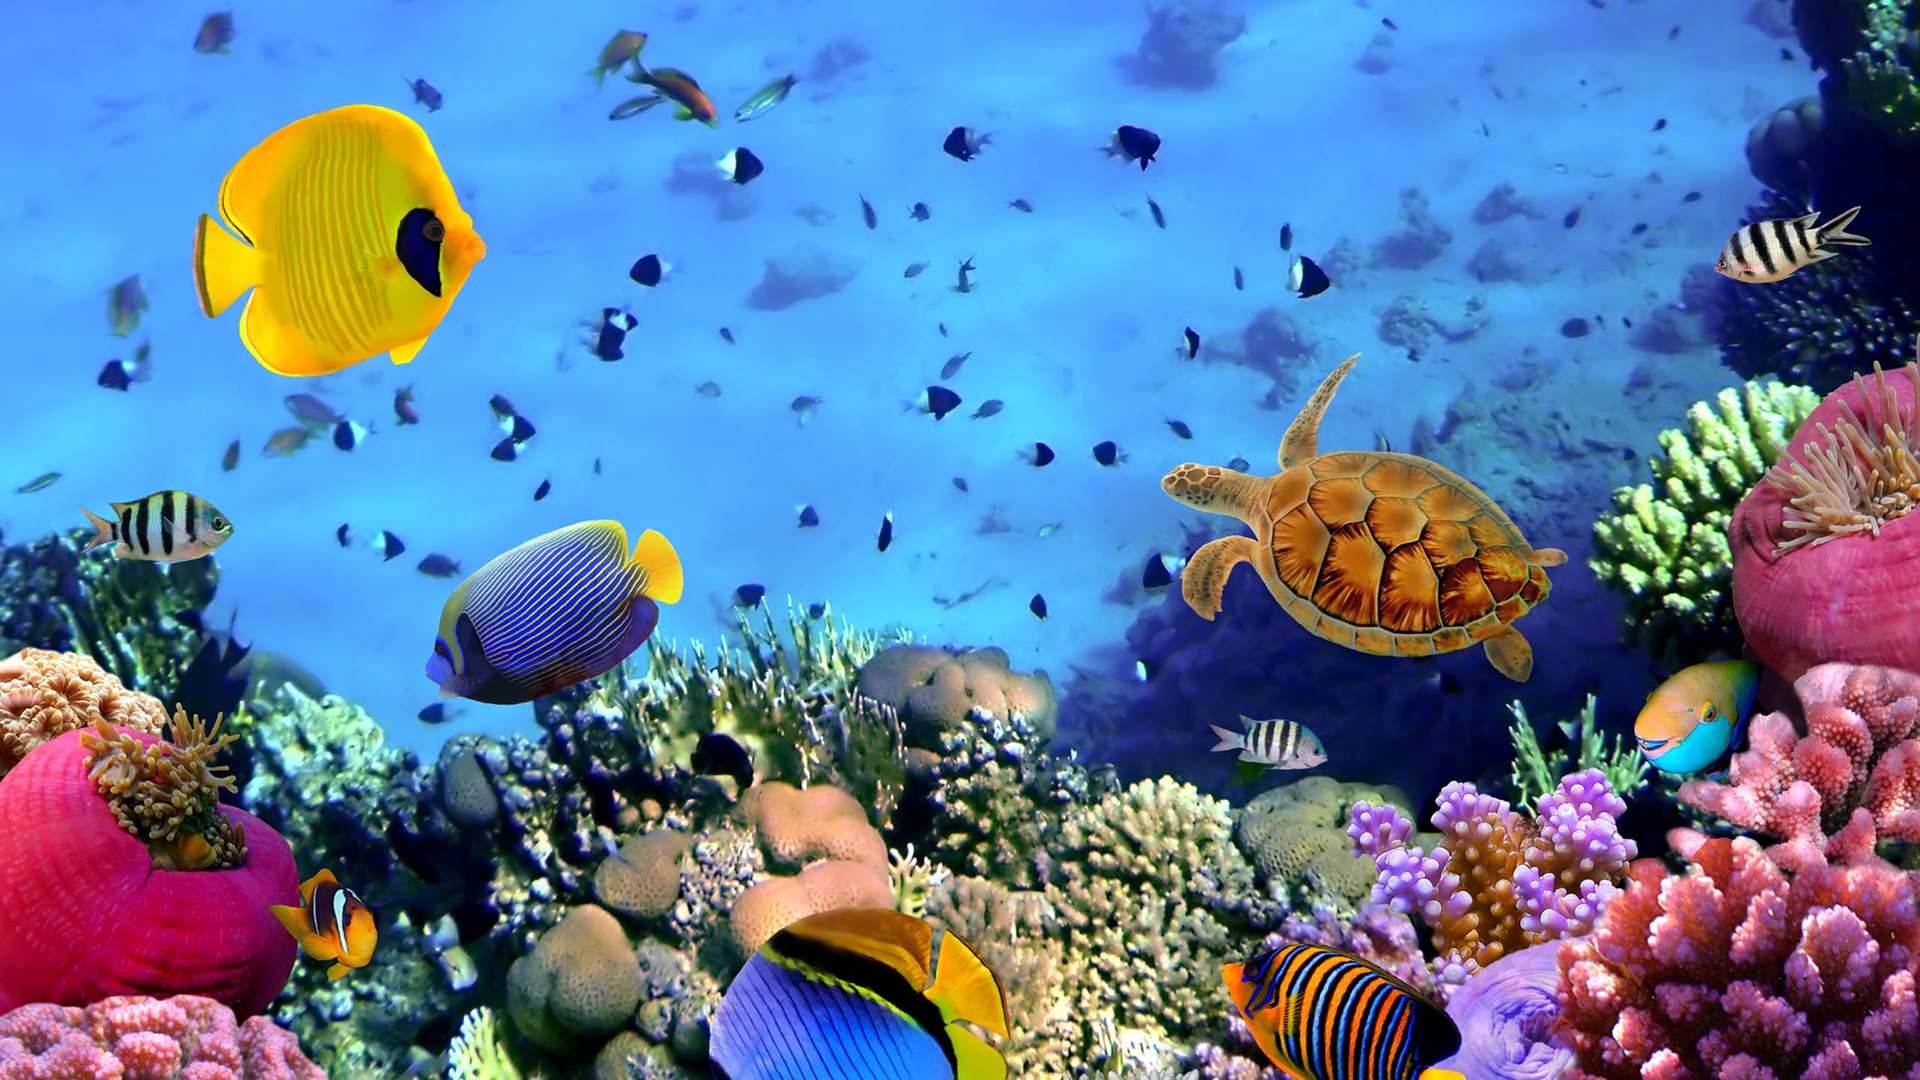 海底世界海龟热带鱼4k专区壁纸海底世界壁纸图片 桌面壁纸图片 壁纸下载 元气壁纸